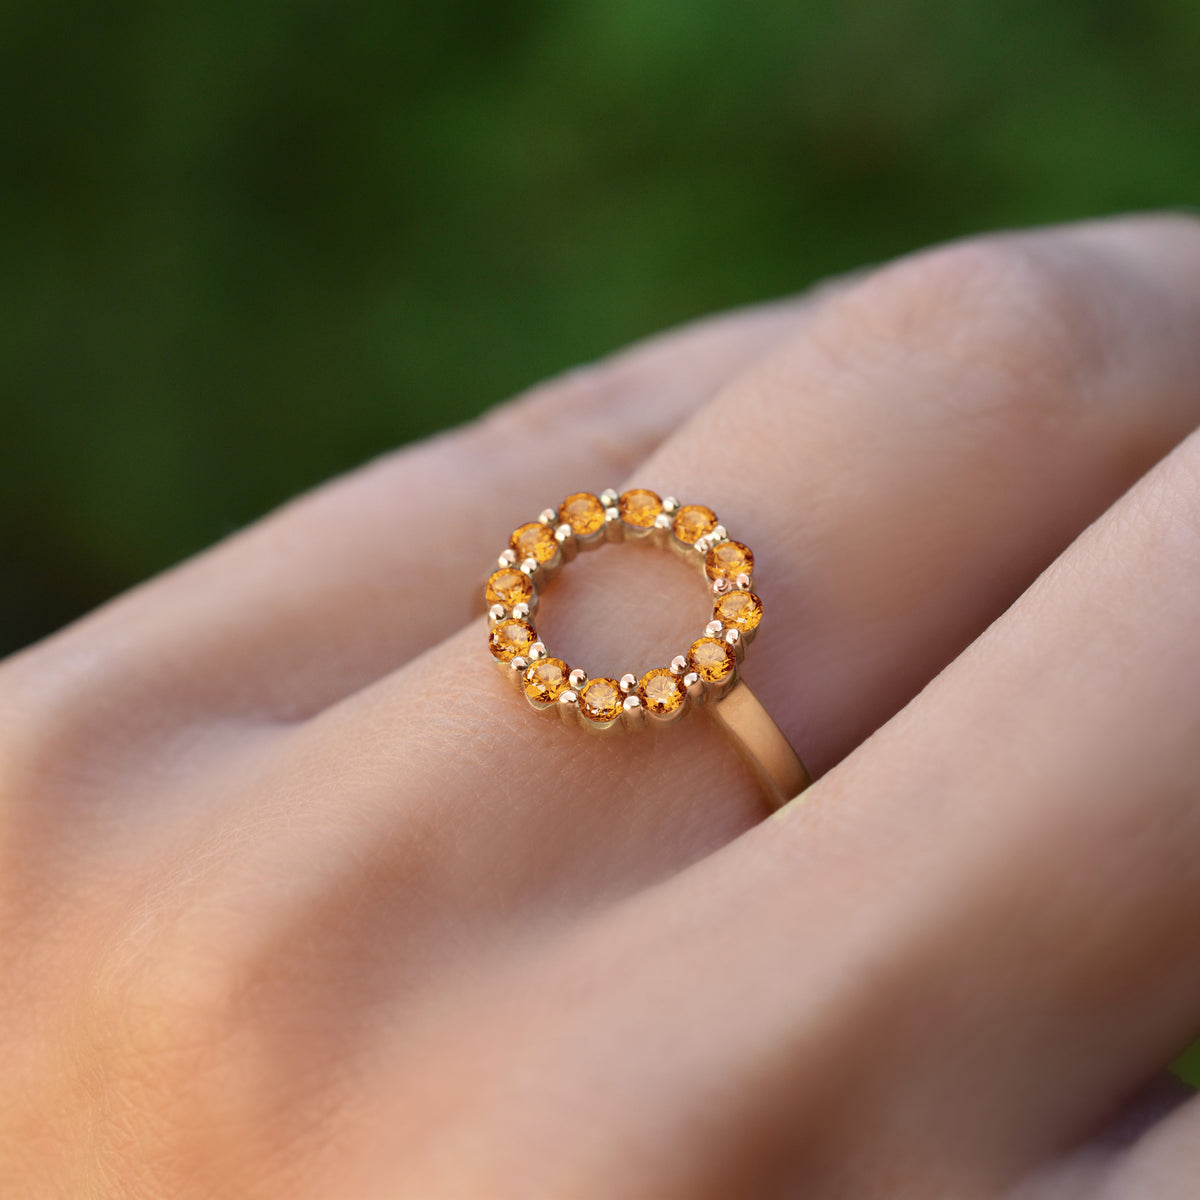 Jewar Mandi Gold Plated Ring for Women & Girls Round Circle Design